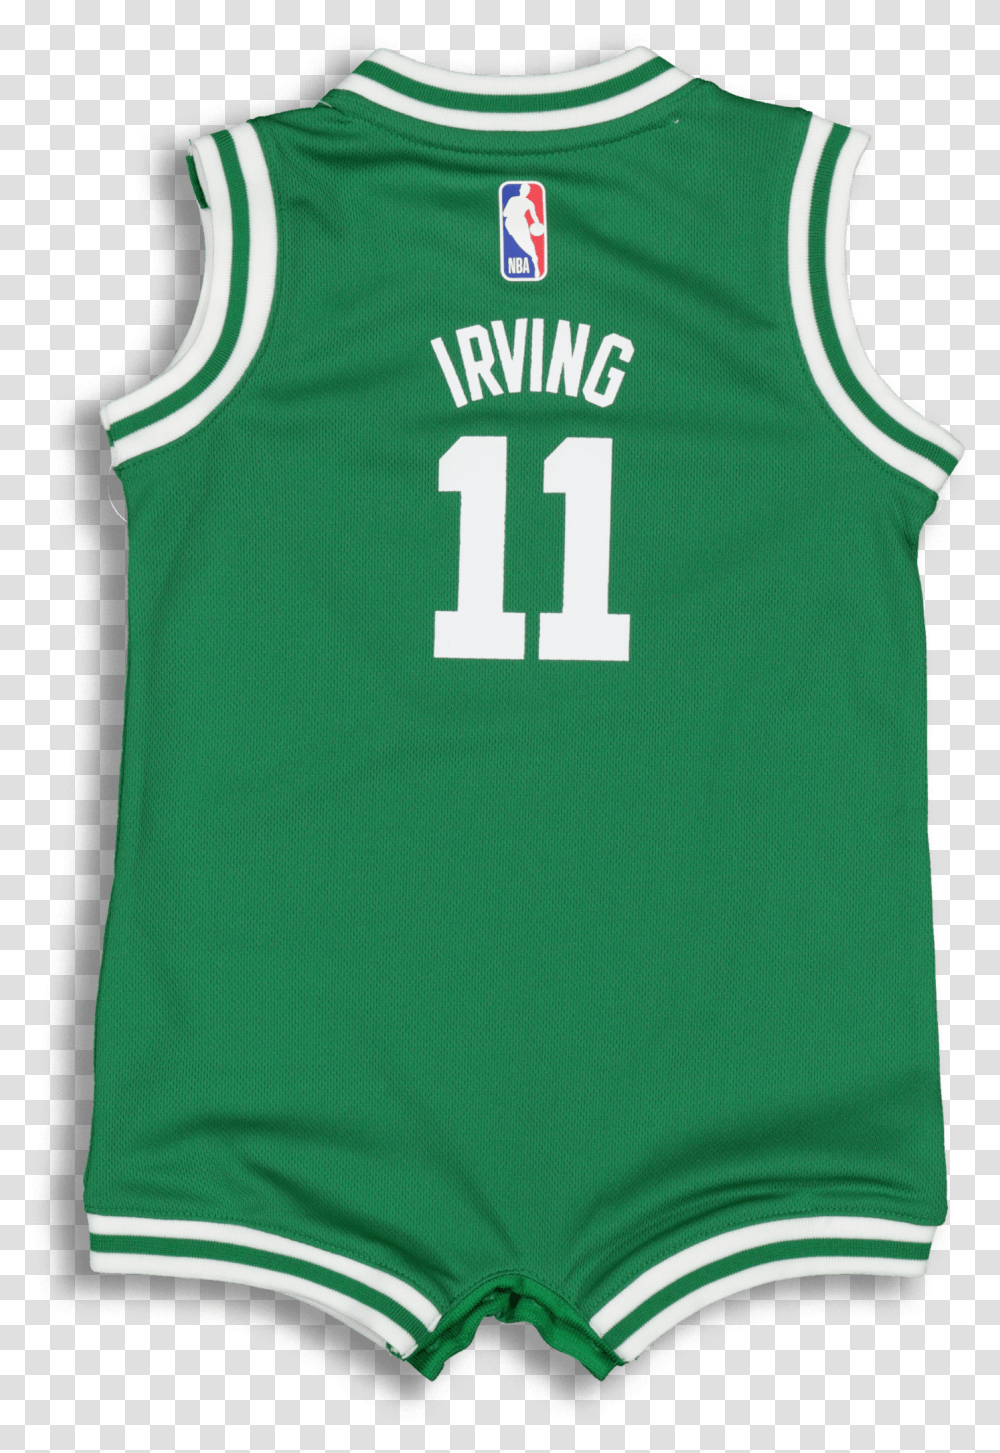 Nike Infant Boston Celtics Kyrie Irving Boston Celtics Transparent Png